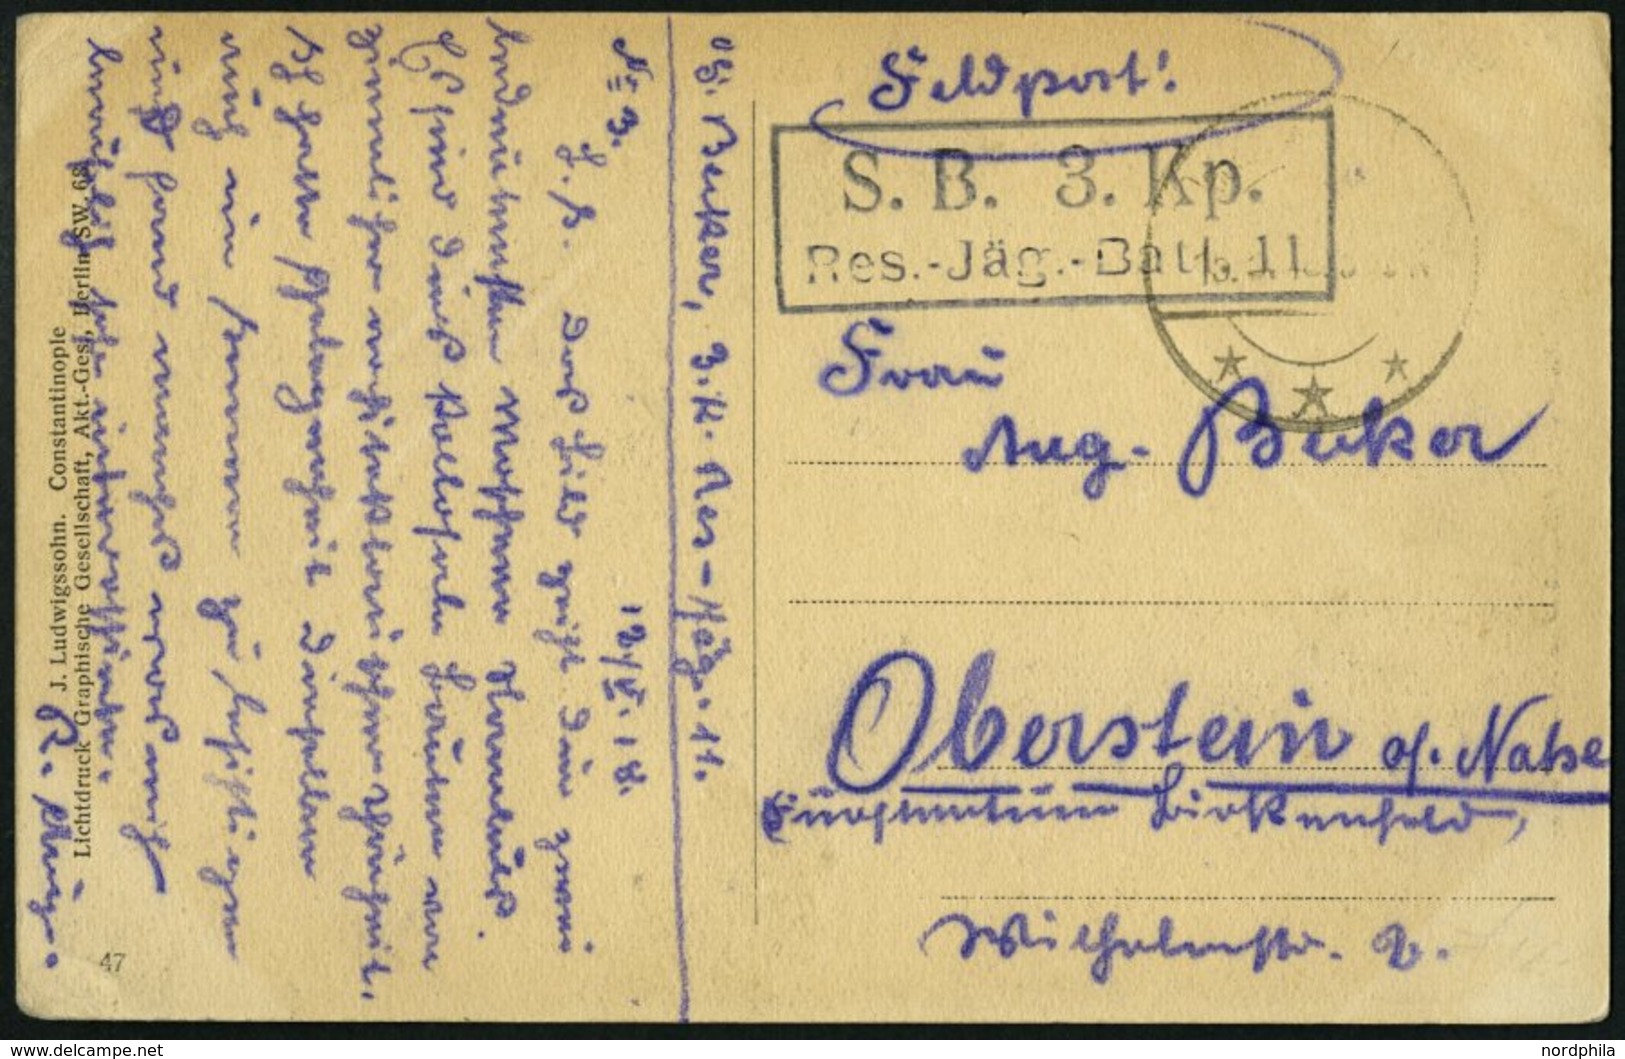 DP TÜRKEI 1918 Feldpoststation RAJAK Auf Feldpost-Ansichtskarte Der 3.Komp.Res.Jäg.Batt 11, Pracht - Deutsche Post In Der Türkei